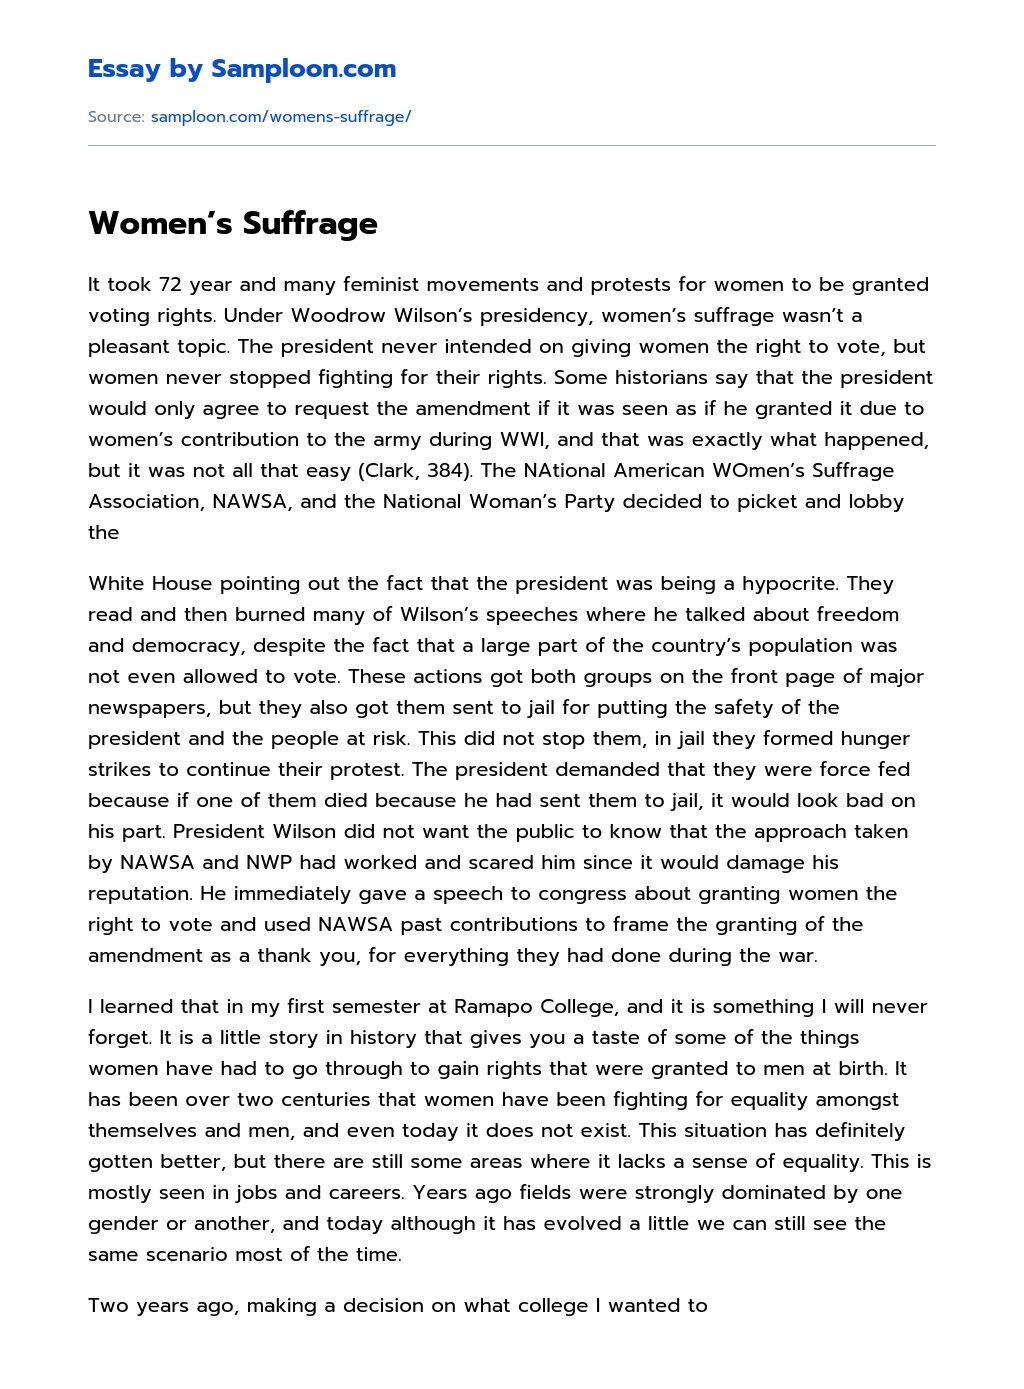 Women’s Suffrage essay